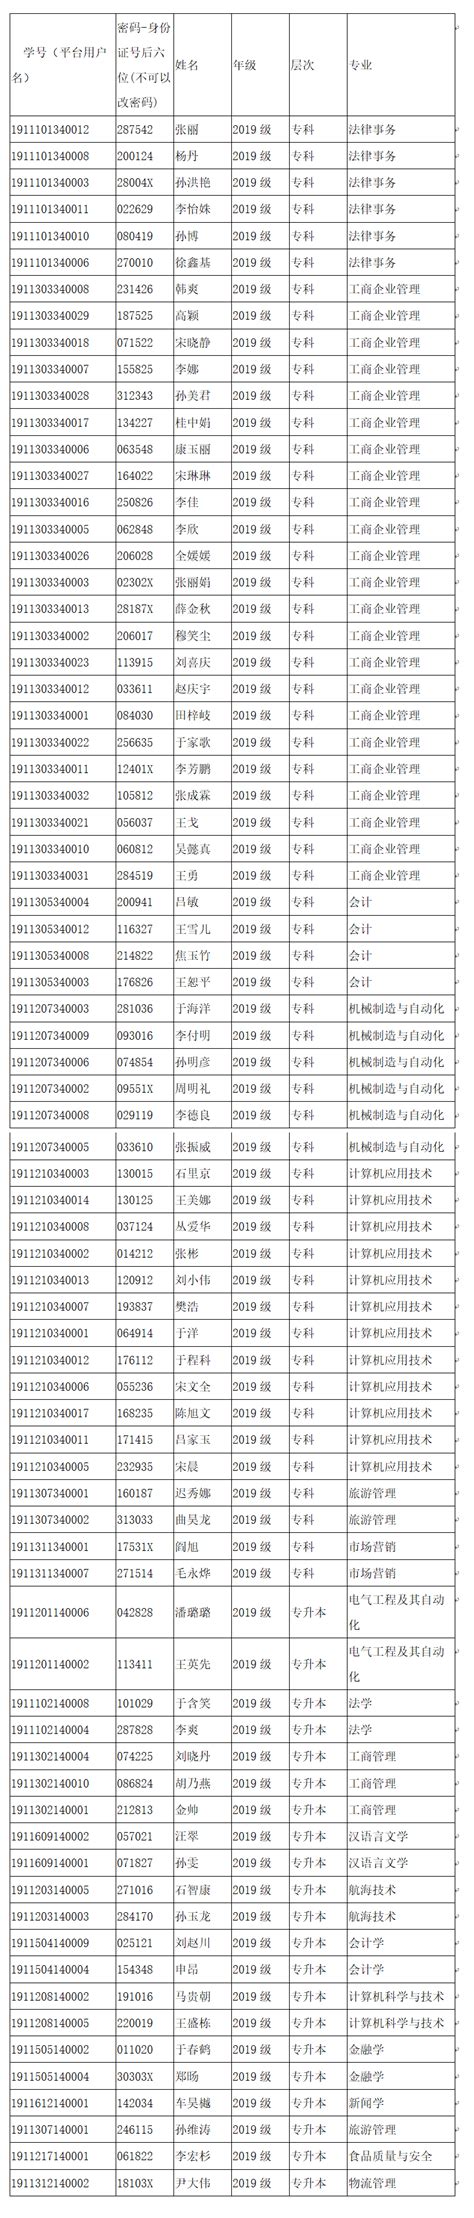 渤海大学2019级学生平台帐号 - 学校公告